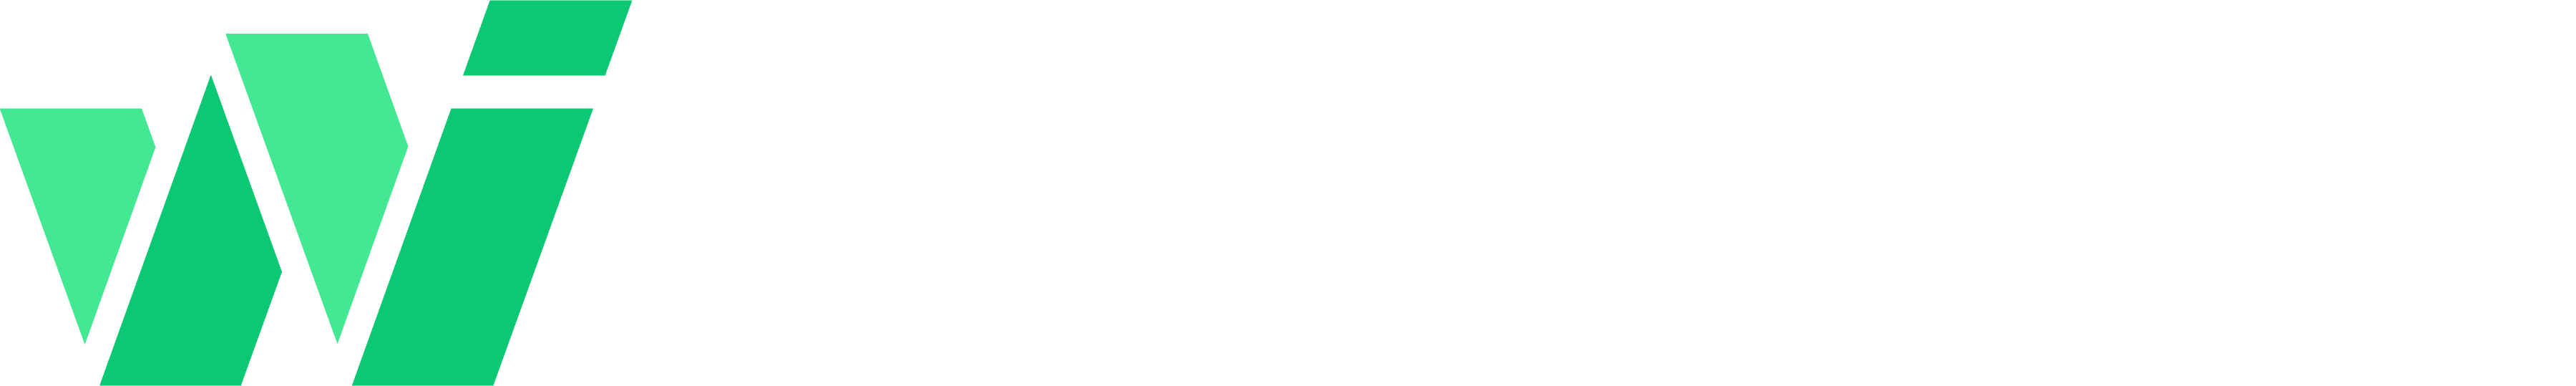 Webb Integrated Logo